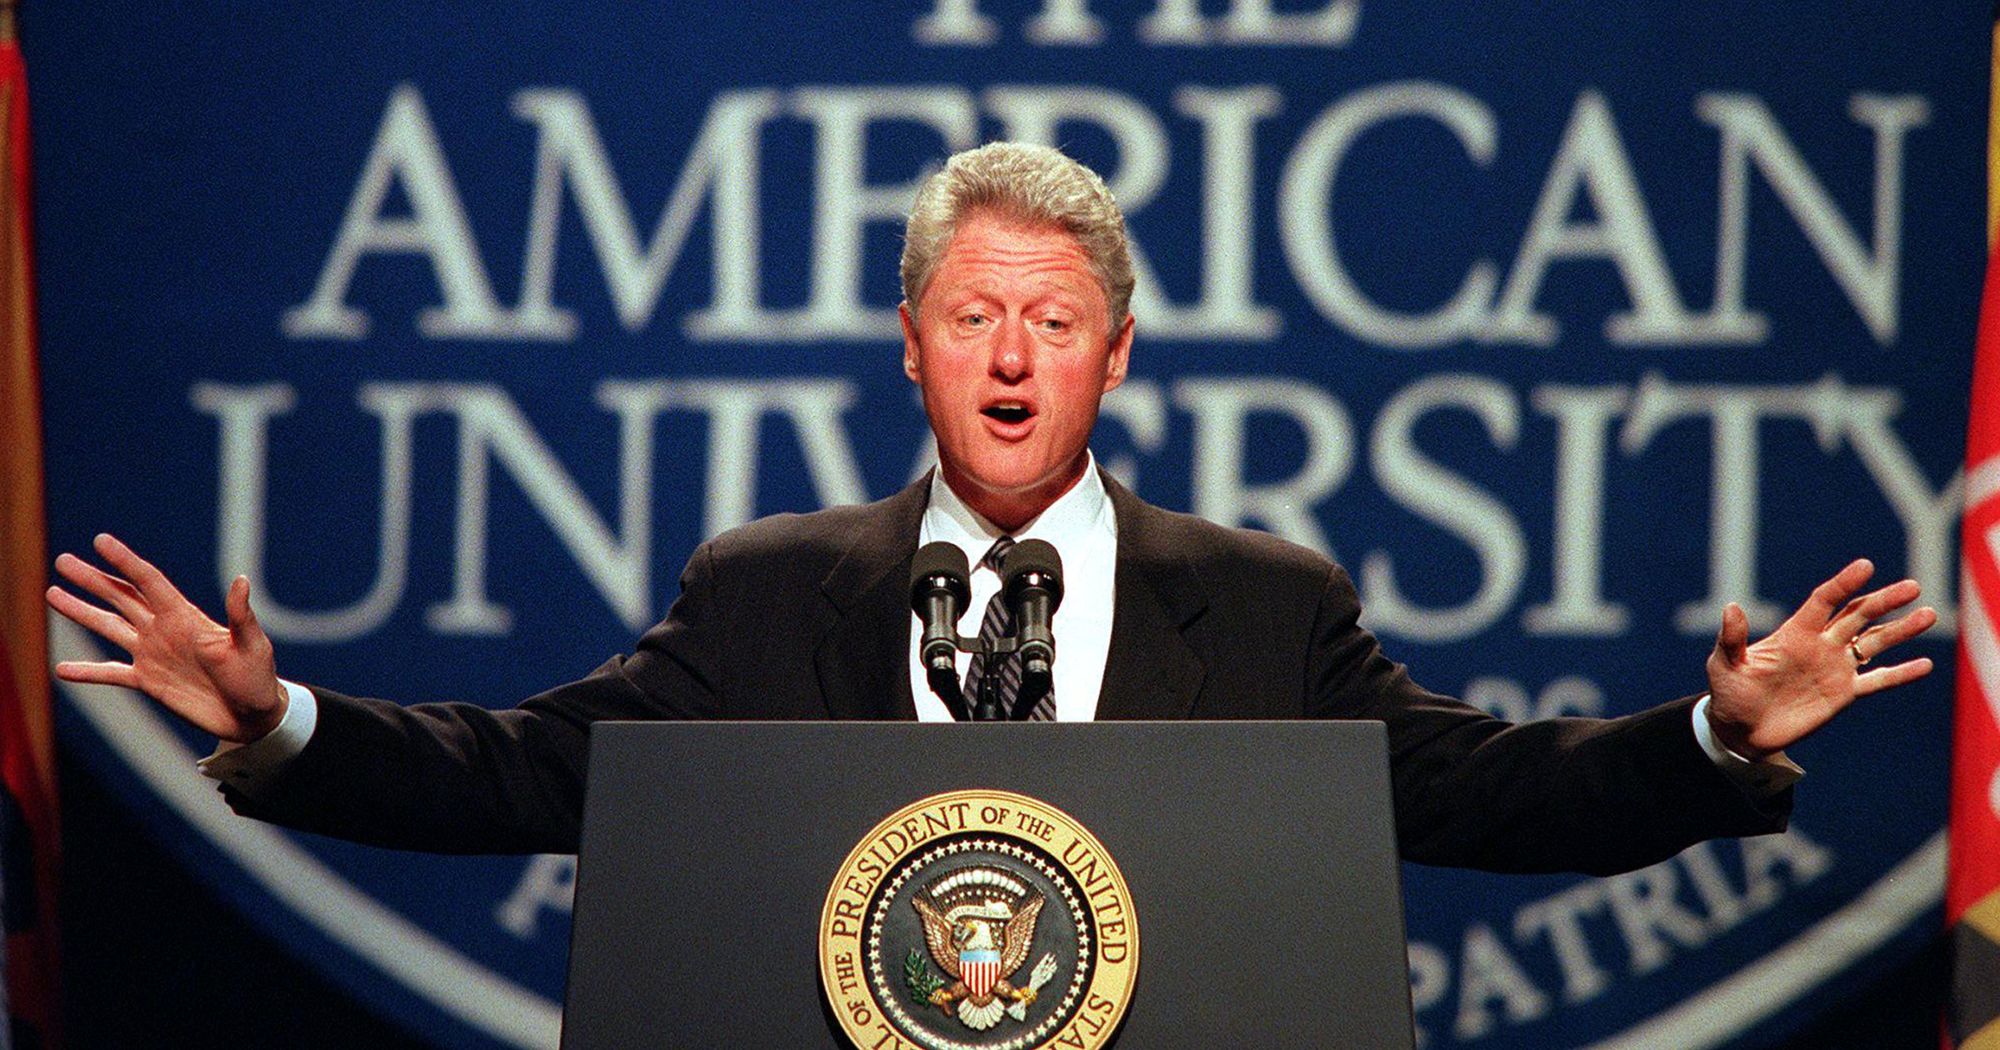 Bill Clinton (No. 42) - IQ 159